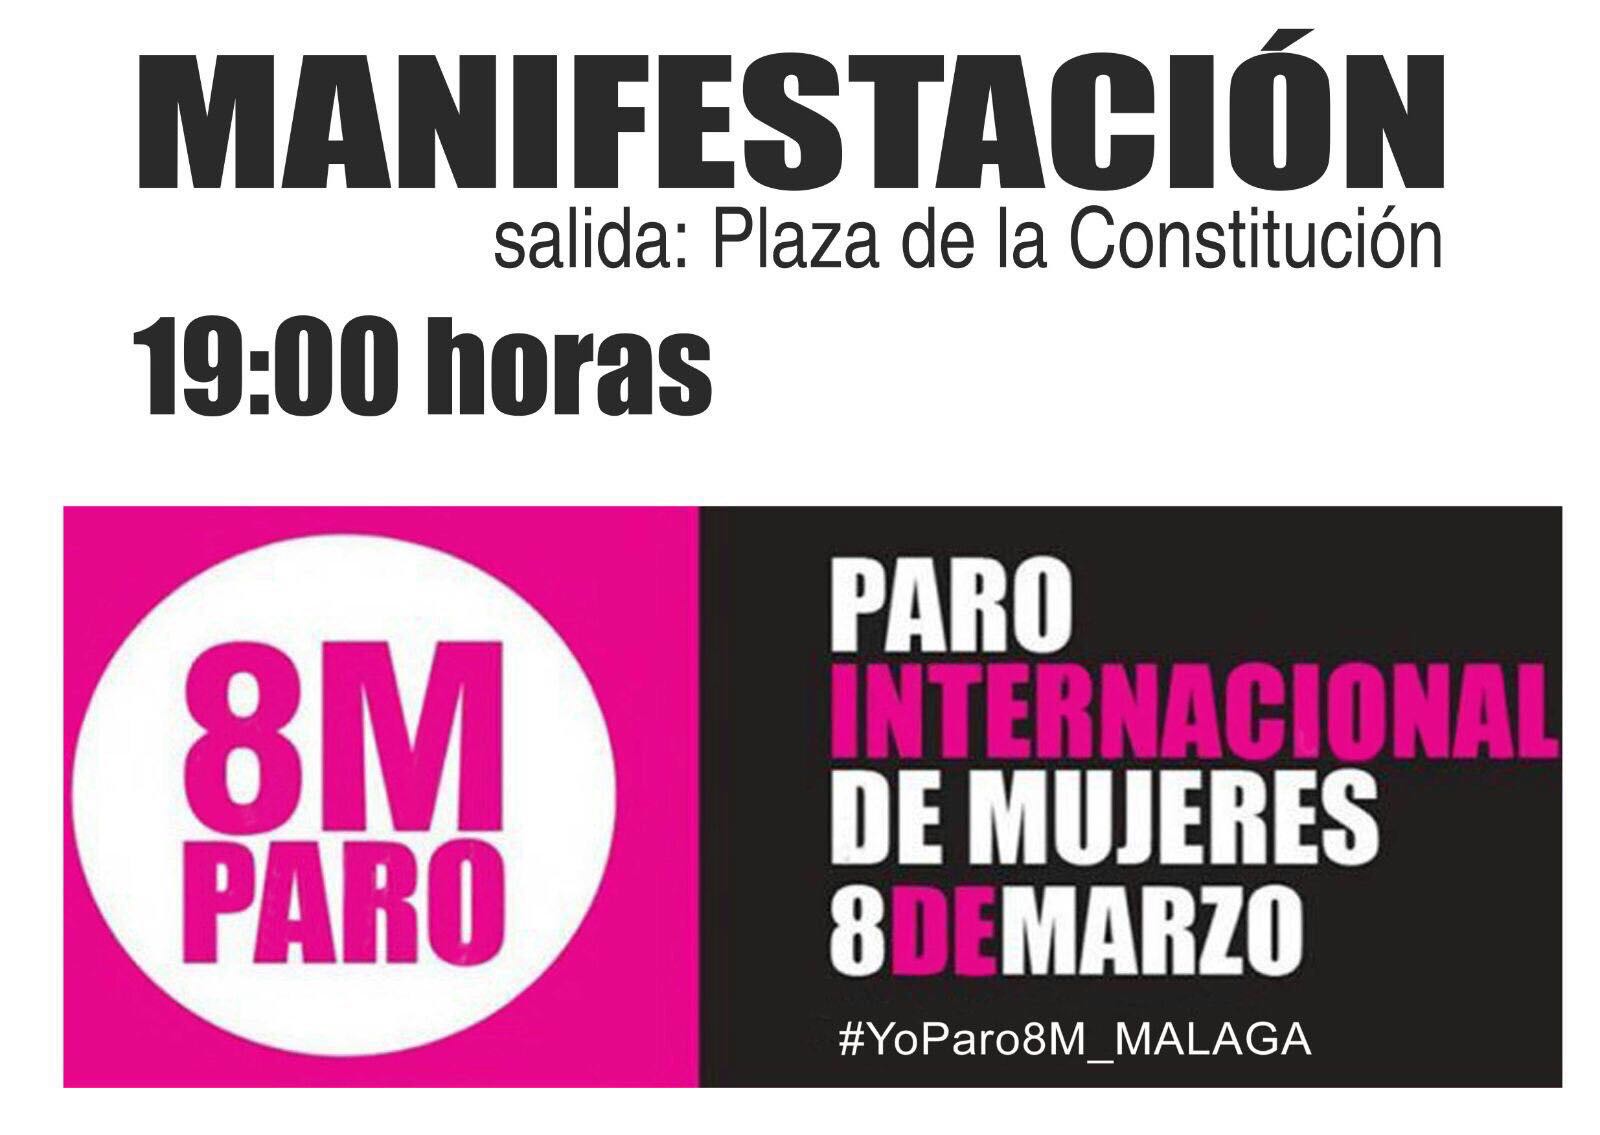 CartelManifestacionMalaga8deMarzo